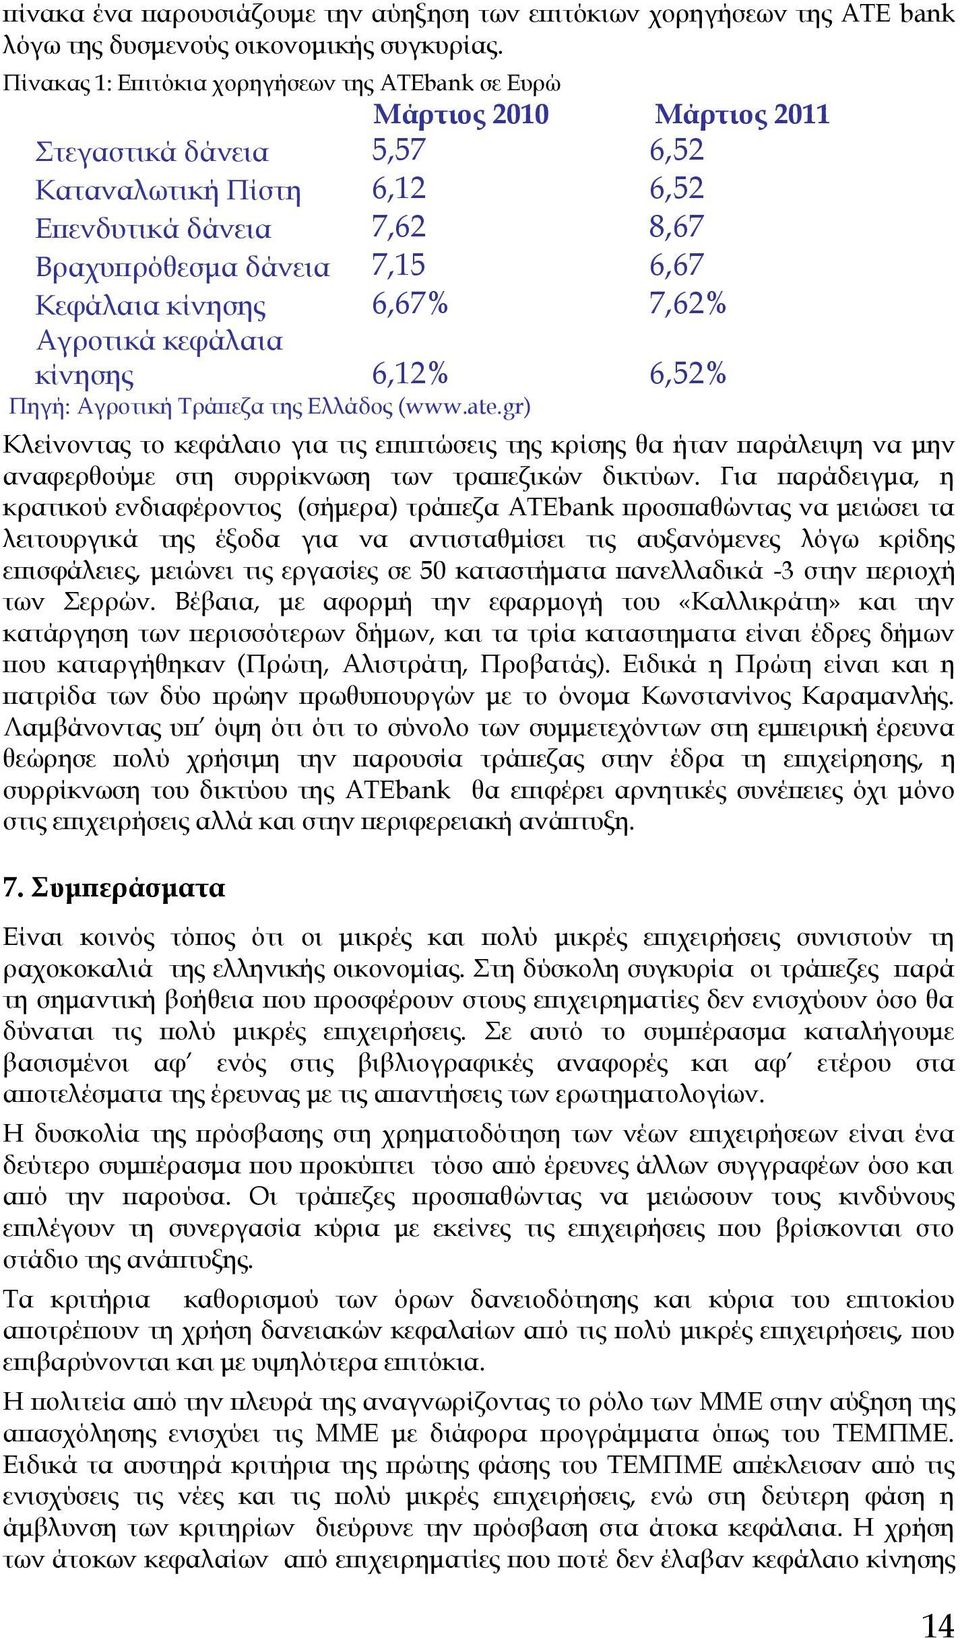 Αγροτικά κεφάλαια κίνησης,1%,5% Πηγή: Αγροτική Σράπεζα της Ελλάδος (www.ate.